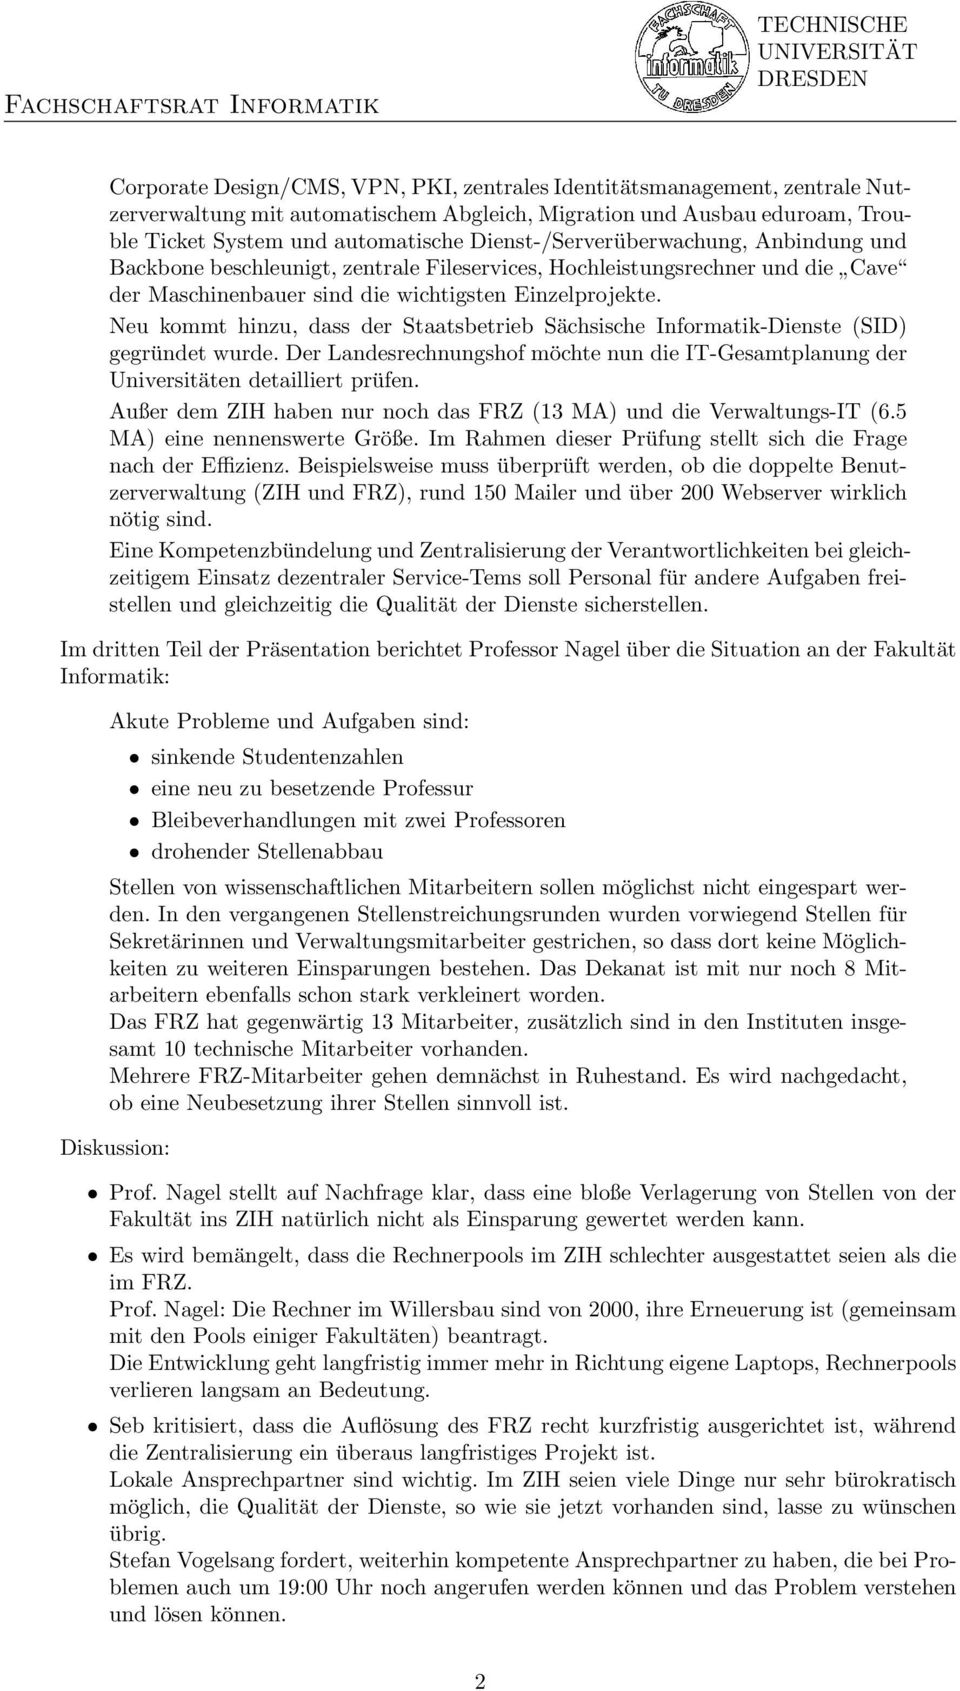 Neu kommt hinzu, dass der Staatsbetrieb Sächsische Informatik-Dienste (SID) gegründet wurde. Der Landesrechnungshof möchte nun die IT-Gesamtplanung der Universitäten detailliert prüfen.